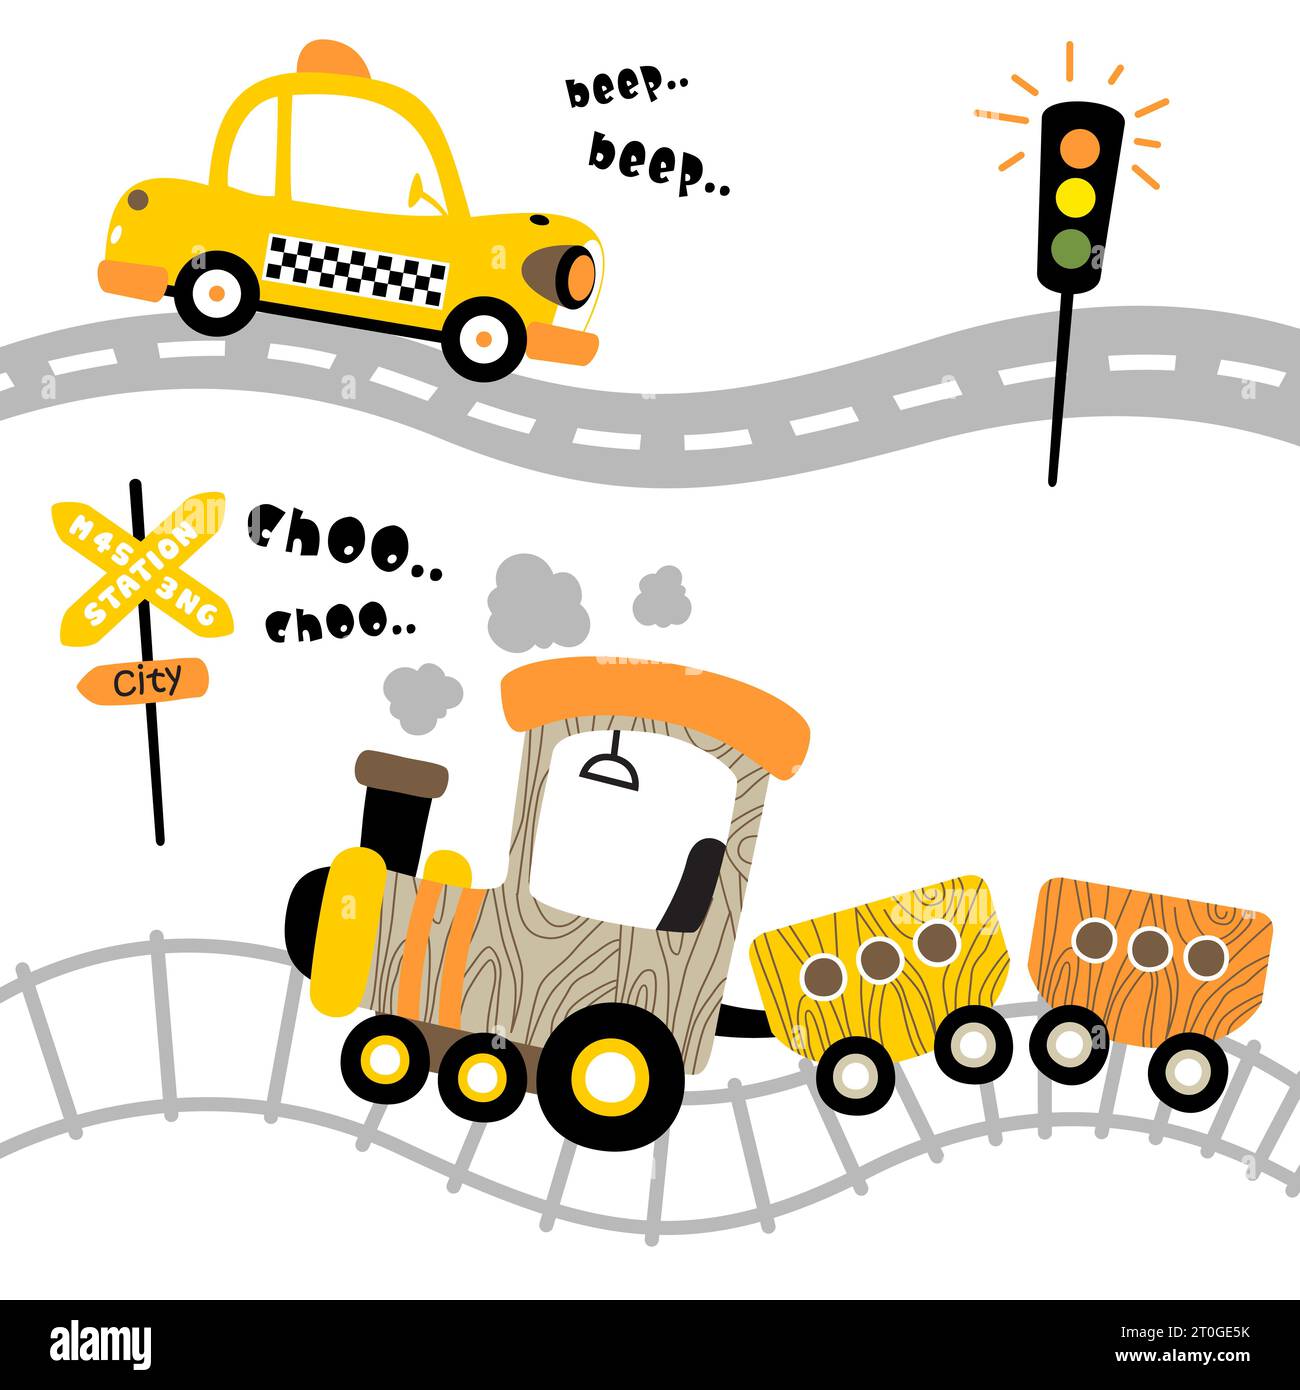 Vecteur de dessin animé de taxi sur la route avec train à vapeur sur le chemin de fer, éléments de transport Illustration de Vecteur